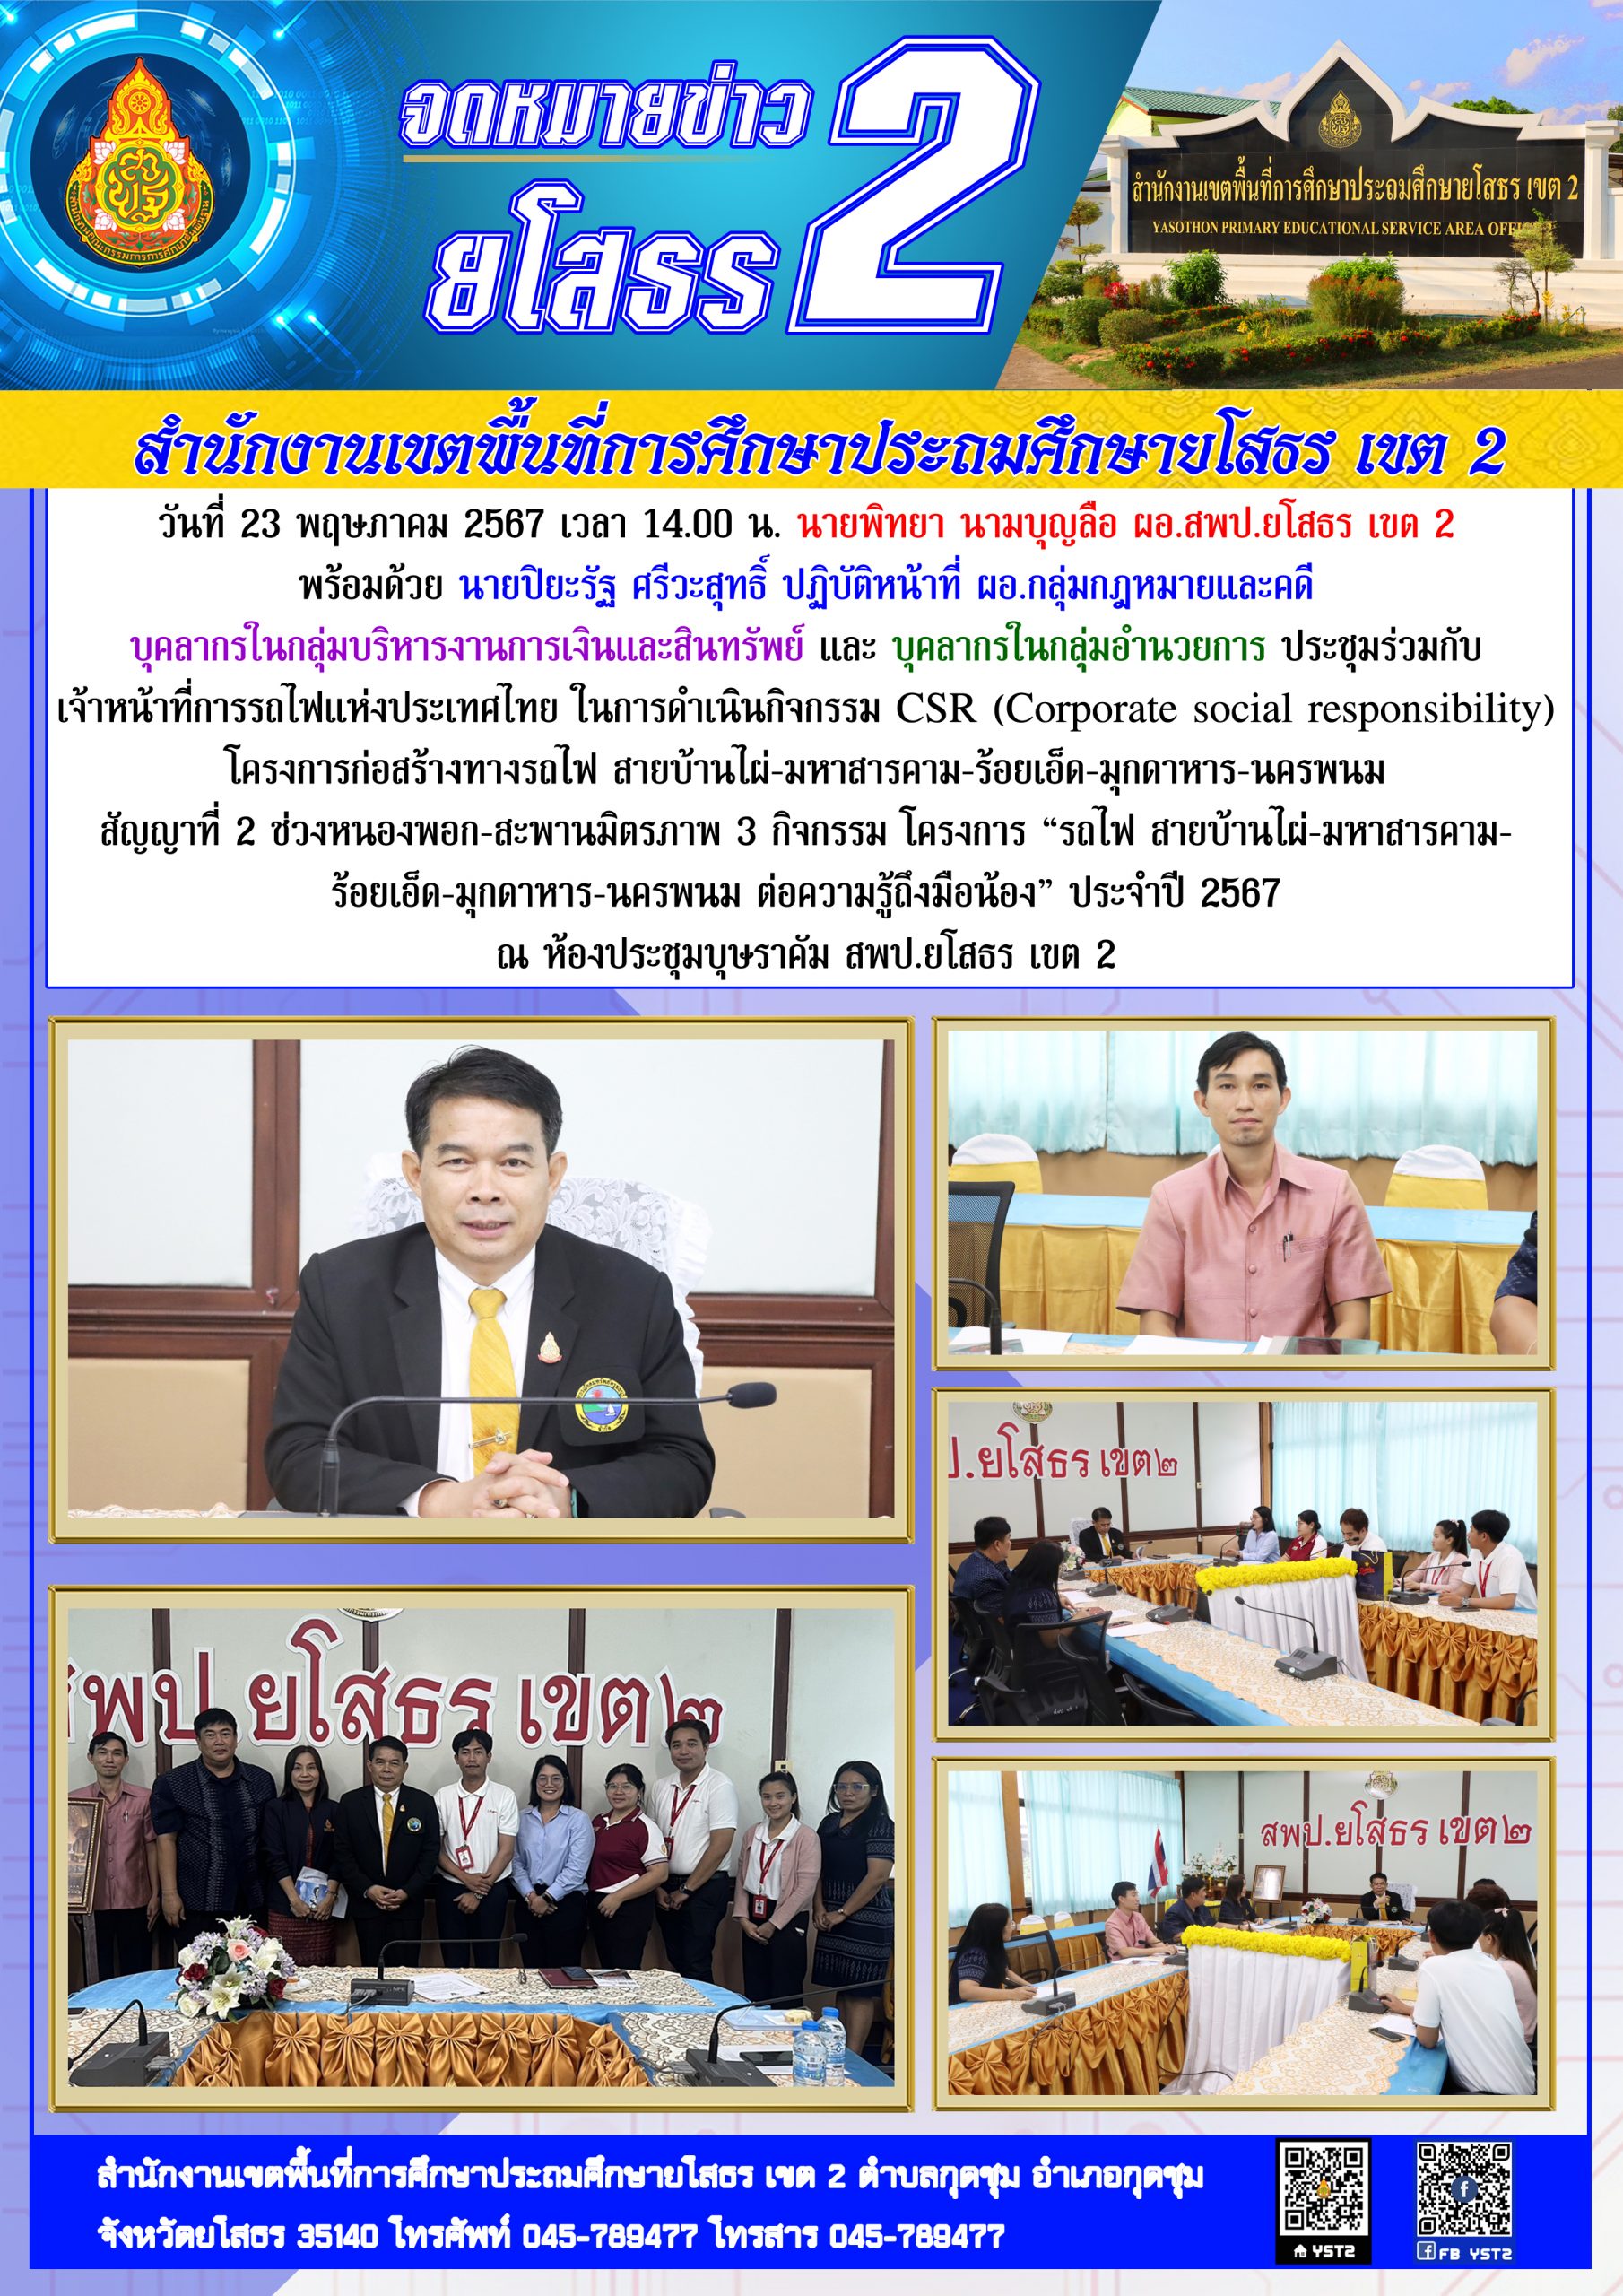 สพป.ยโสธร เขต 2 ประชุมร่วมกับเจ้าหน้าที่การรถไฟแห่งประเทศไทย ในการดำเนินกิจกรรม CSR (Corporate social responsibility) โครงการก่อสร้างทางรถไฟ สายบ้านไผ่-มหาสารคาม-ร้อยเอ็ด-มุกดาหาร-นครพนม สัญญาที่ 2 ช่วงหนองพอก-สะพานมิตรภาพ 3